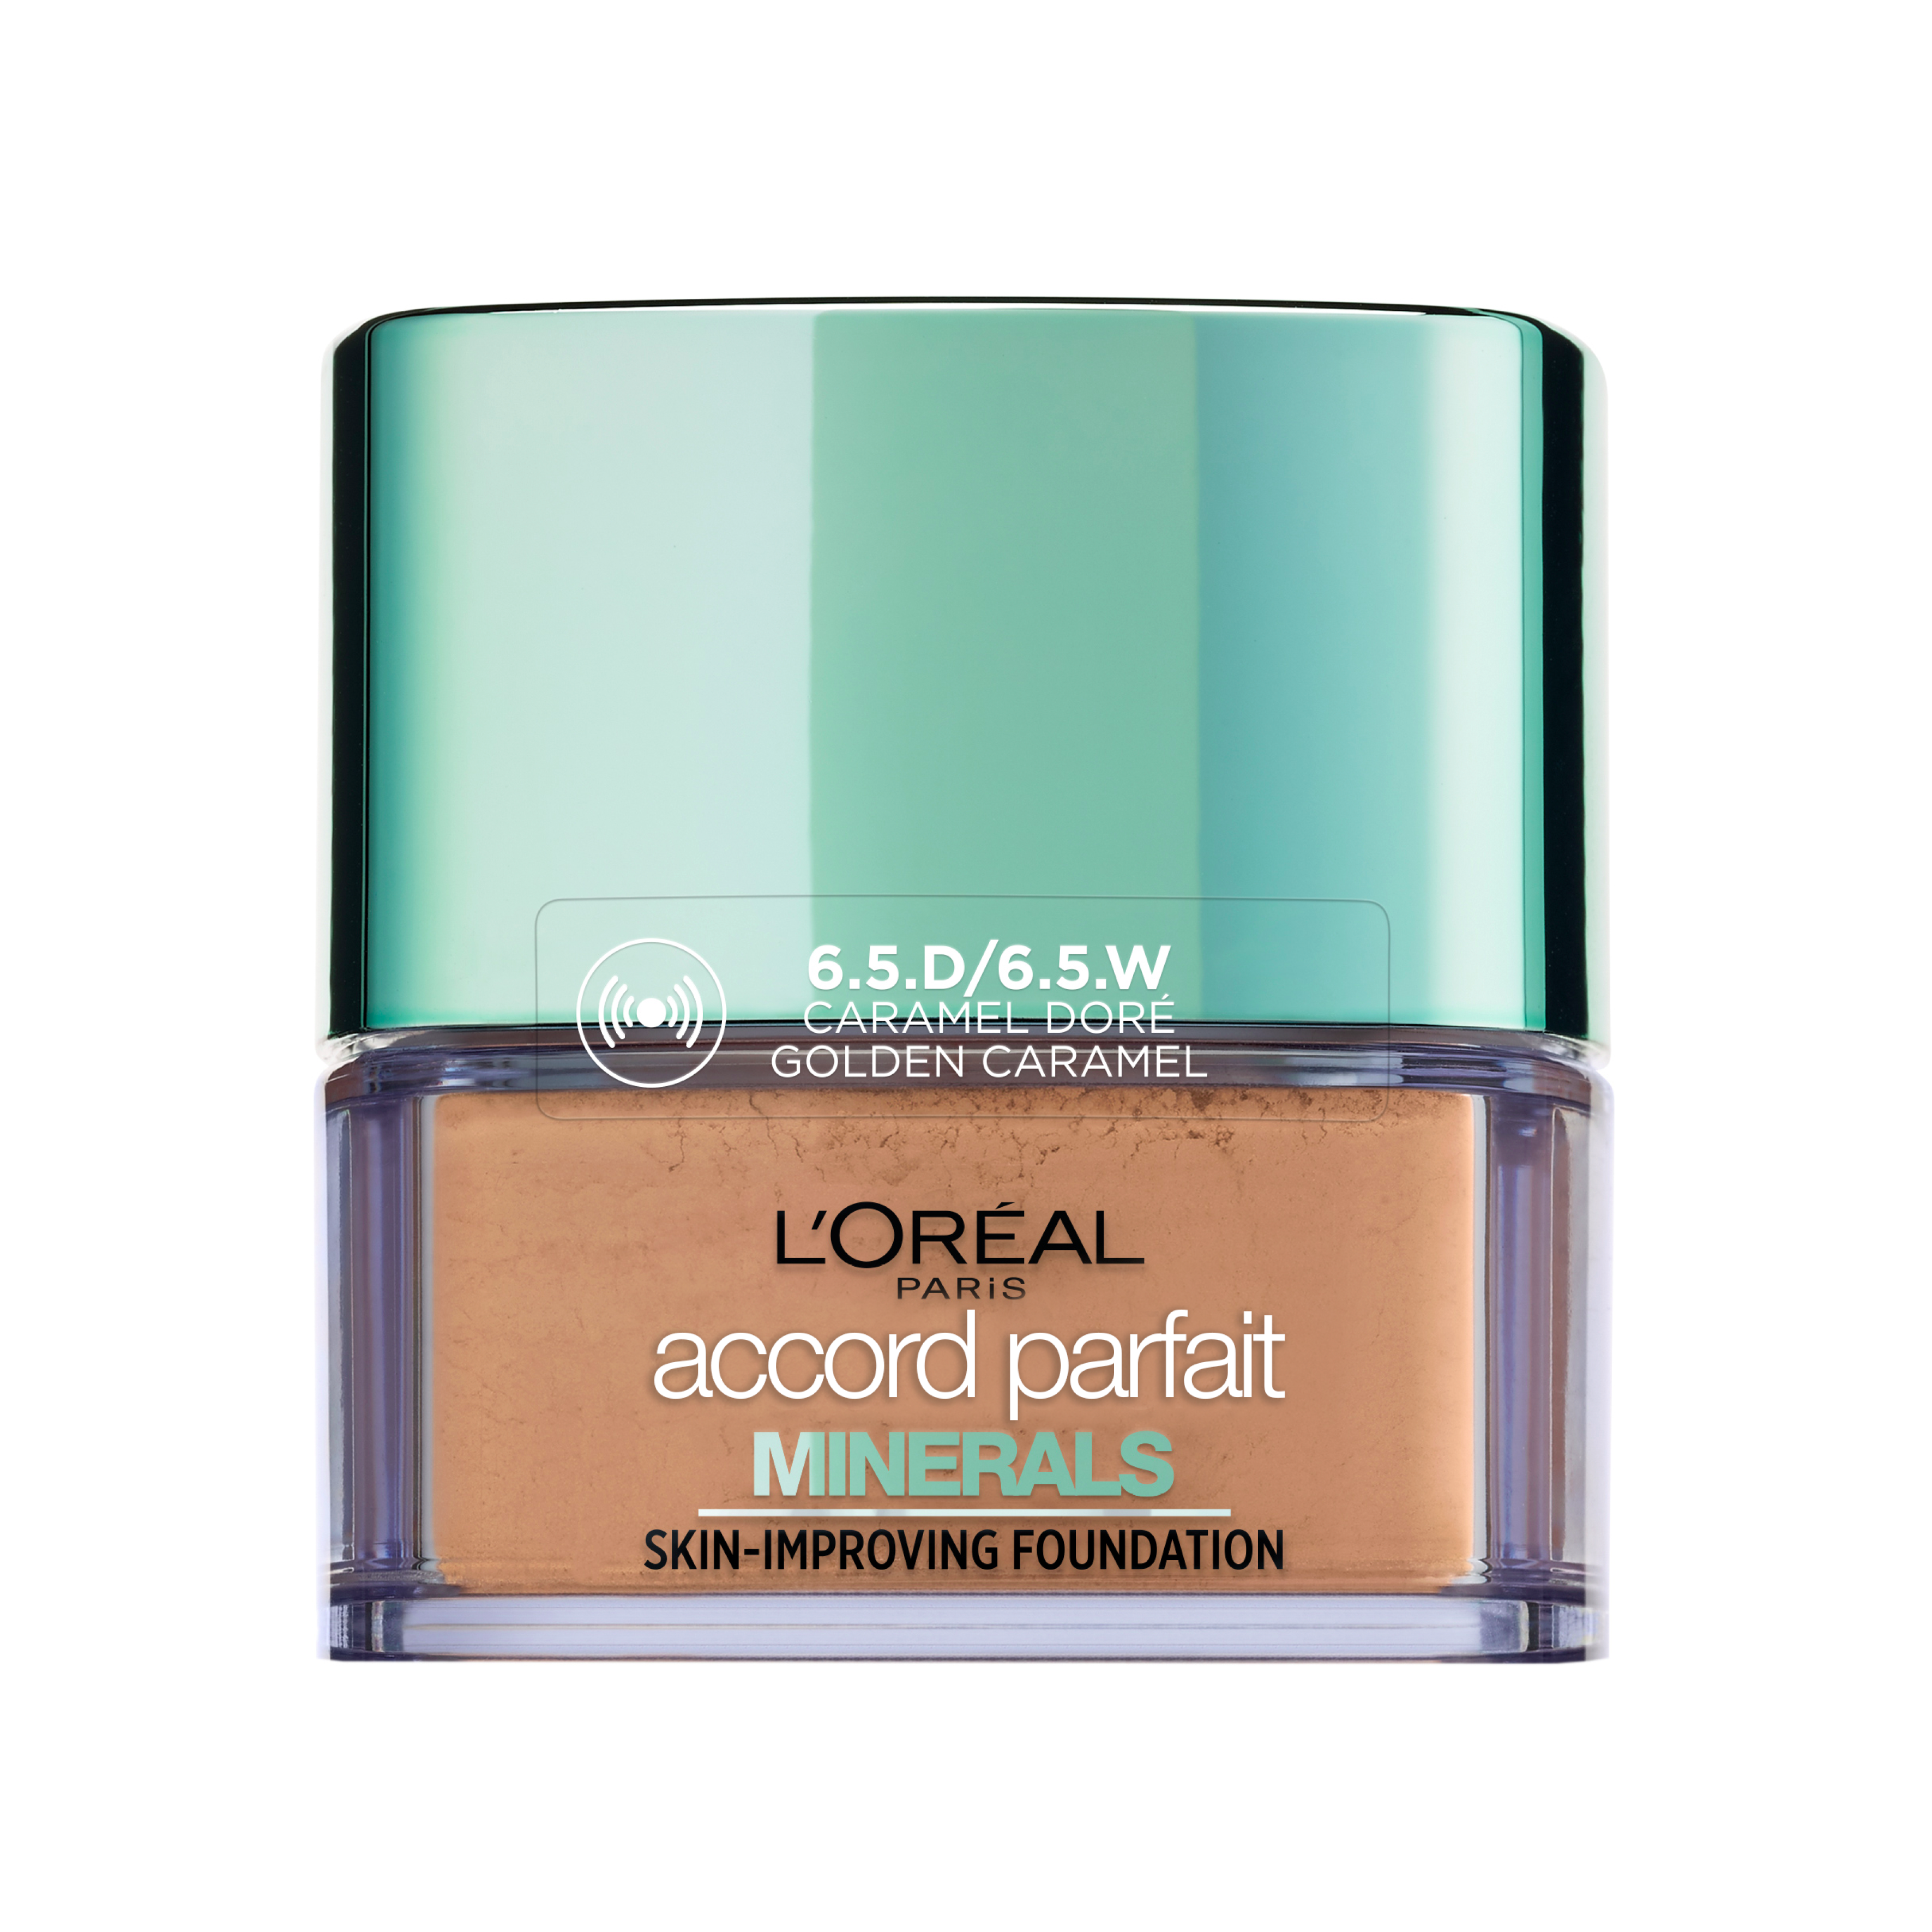 L'Oréal Make-Up Designer Accord Parfait Minerals - 6,5D/6,5W Caramel Doré - Foundation